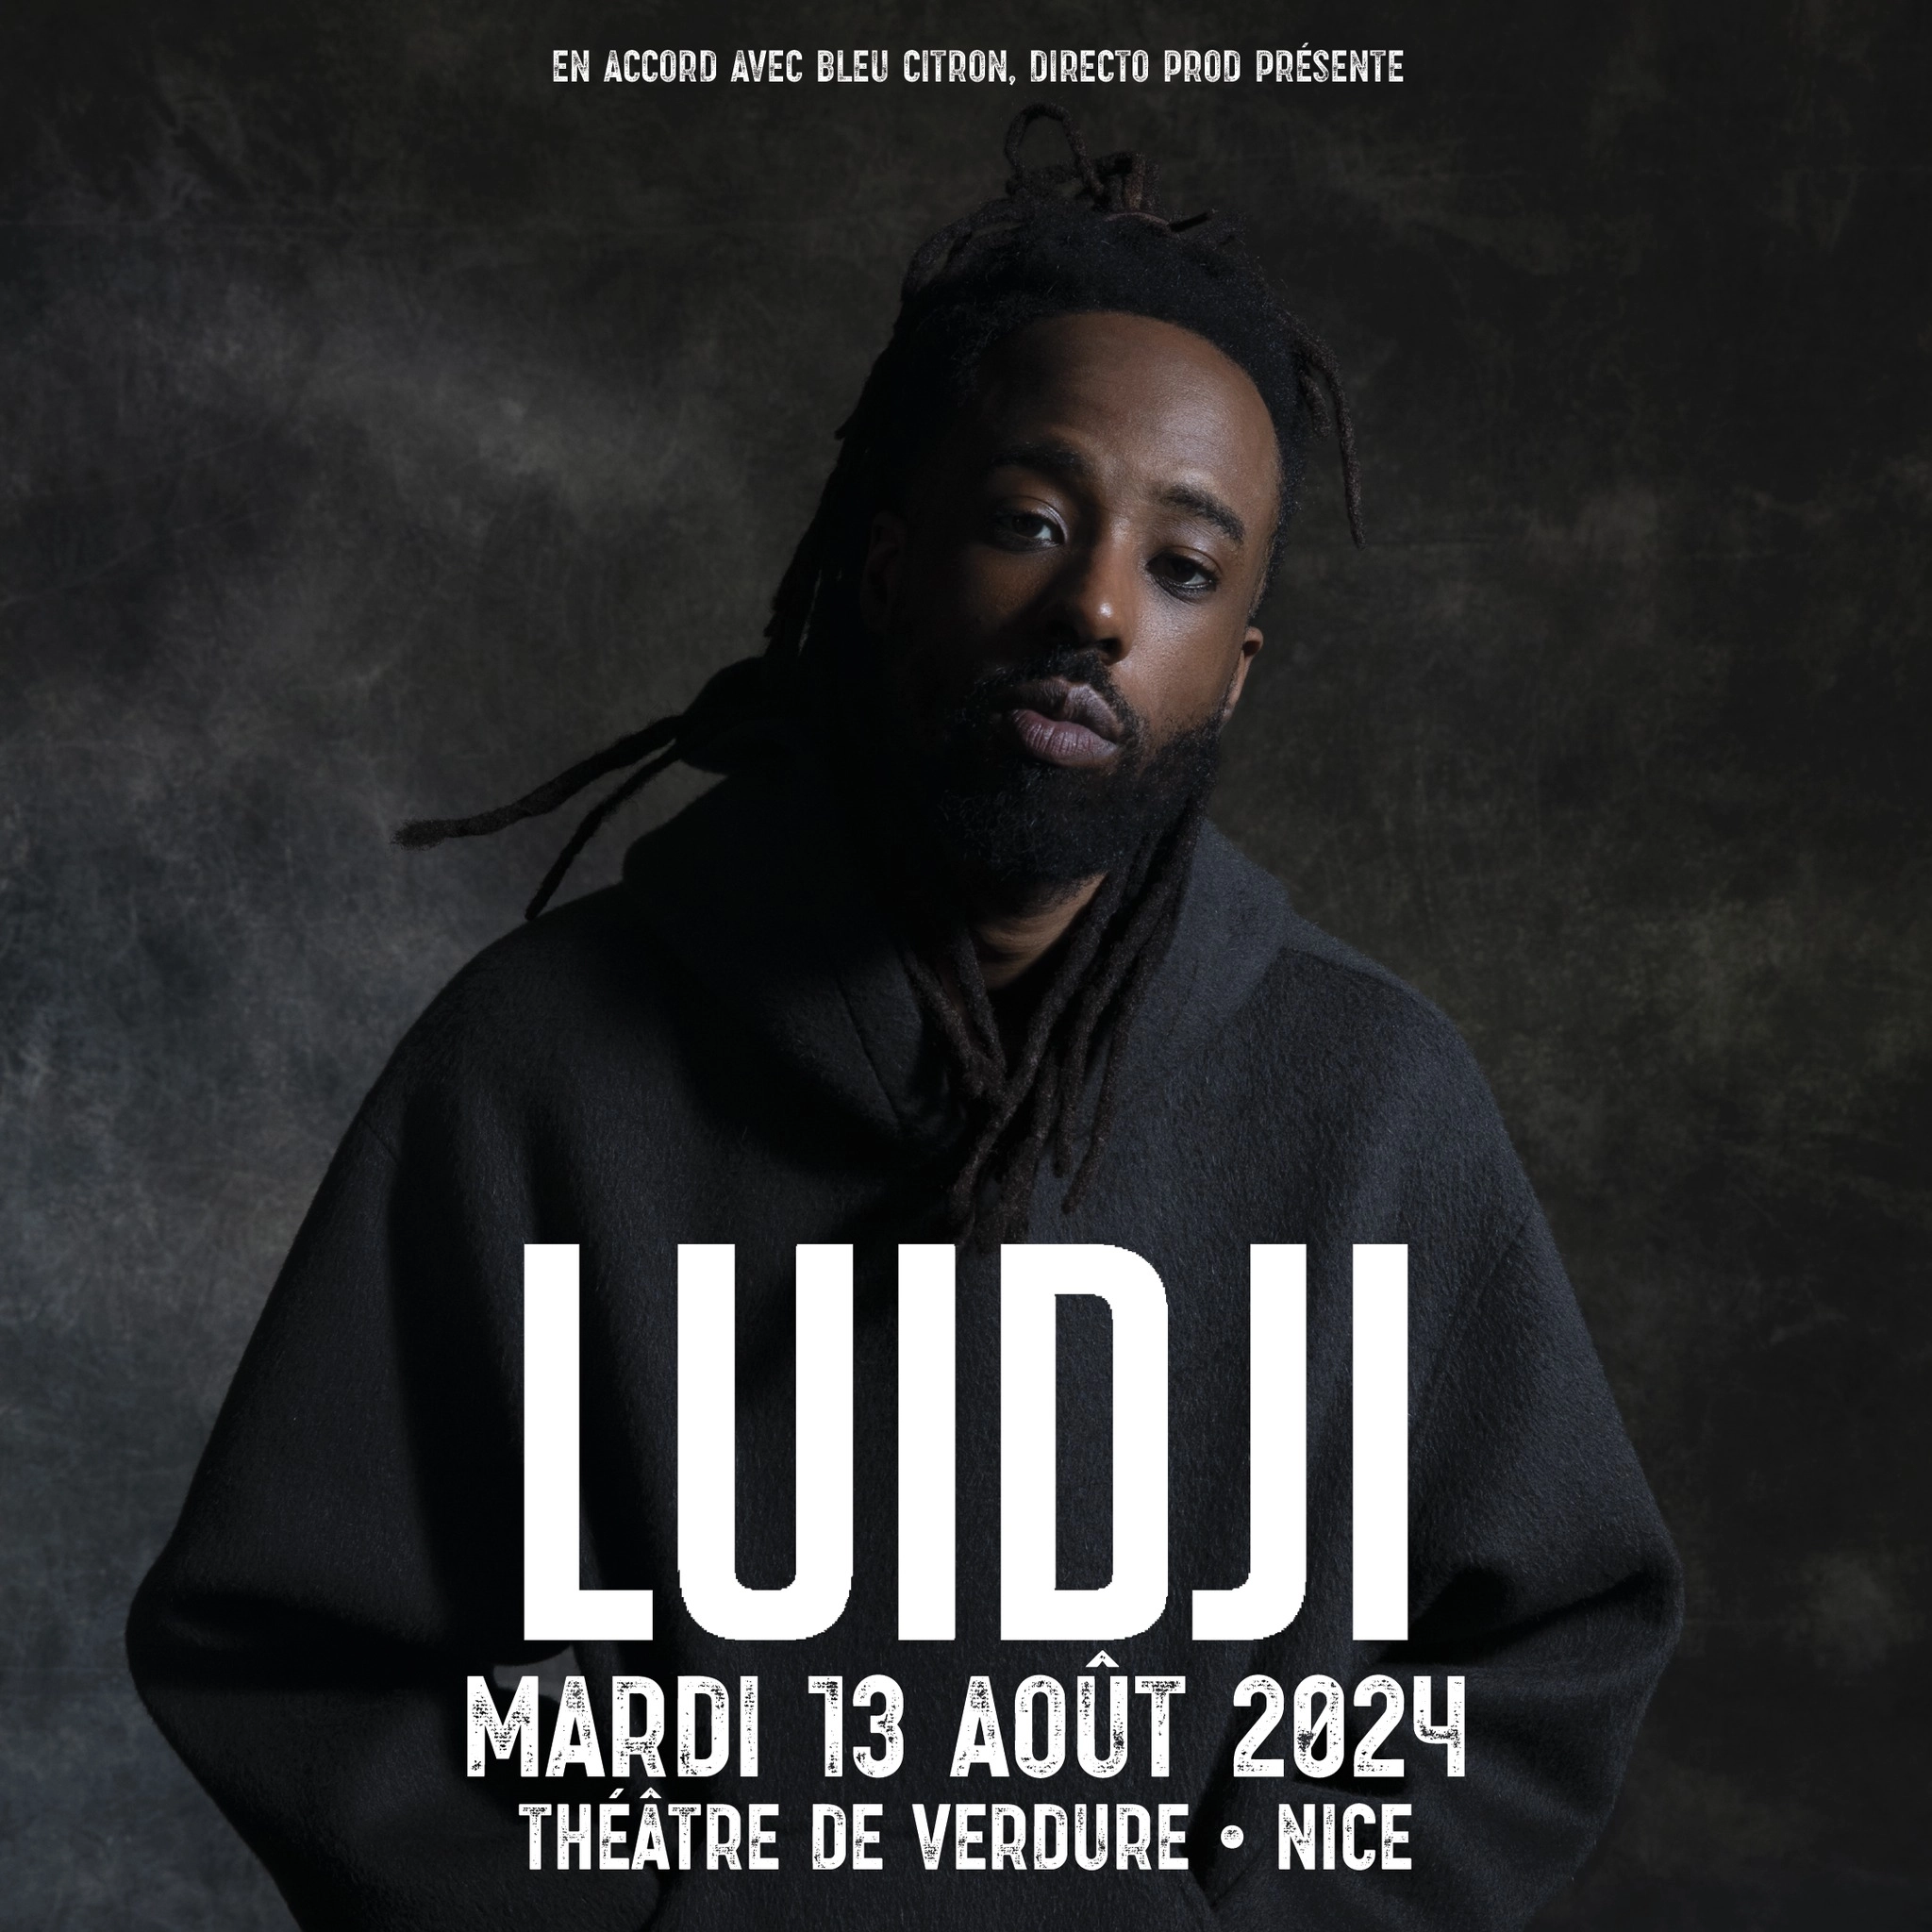 Concert Luidji à Nice (Theatre De Verdure Nice) du 13 août 2024